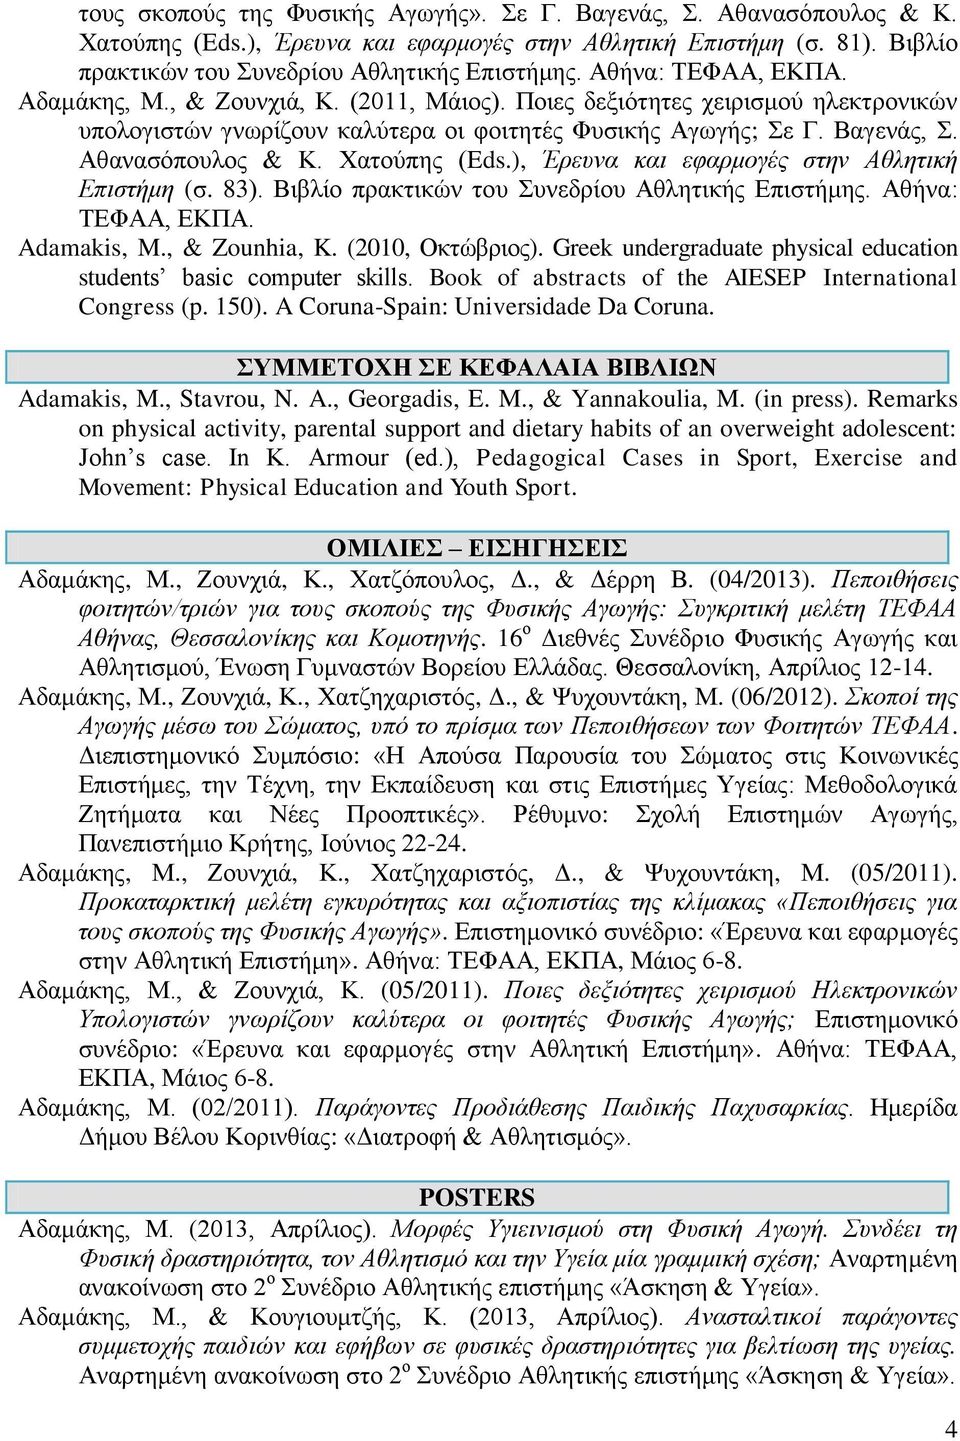 ), Έρευνα και εφαρμογές στην Αθλητική Επιστήμη (σ. 83). Βιβλίο πρακτικών του Συνεδρίου Αθλητικής Επιστήμης. Αθήνα: Adamakis, M., & Zounhia, K. (2010, Οκτώβριος).